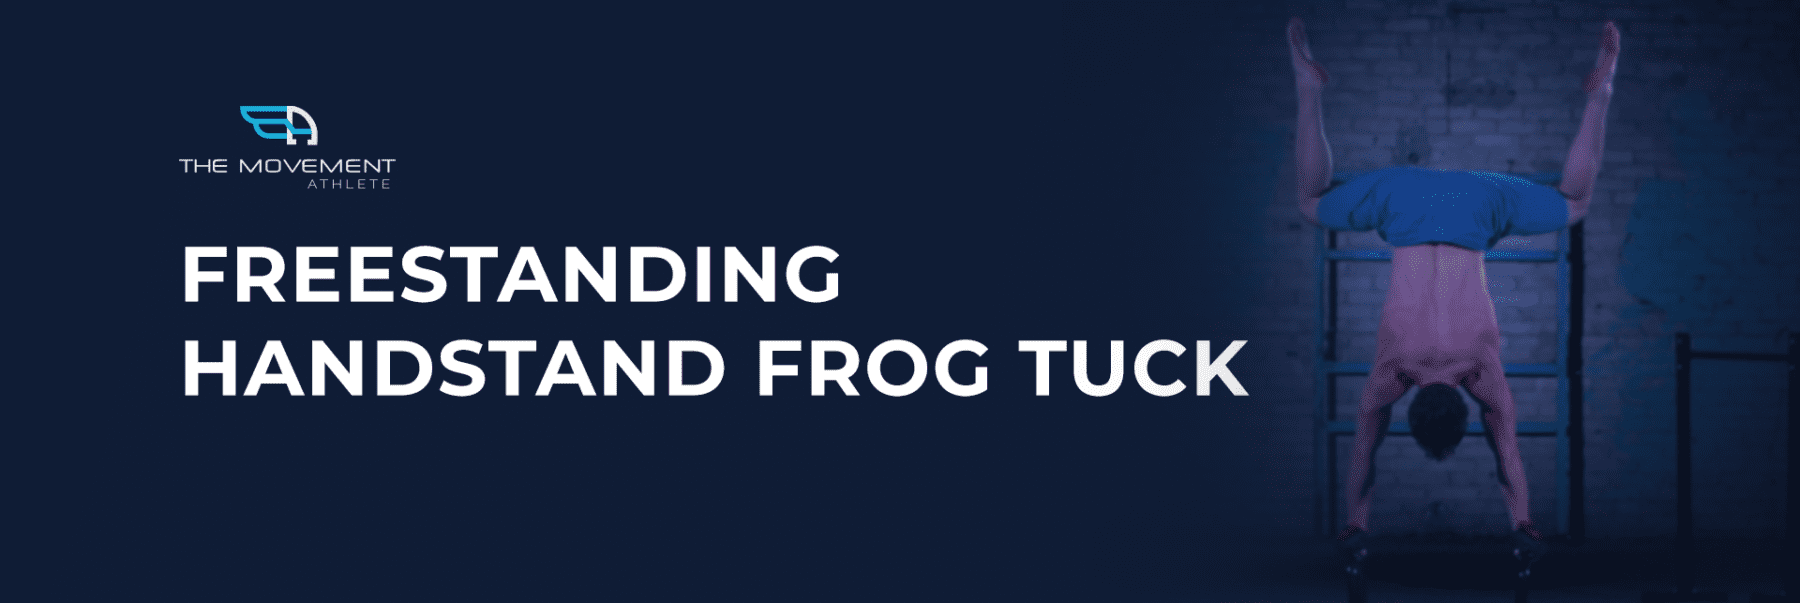 Freestanding Handstand Frog Tuck